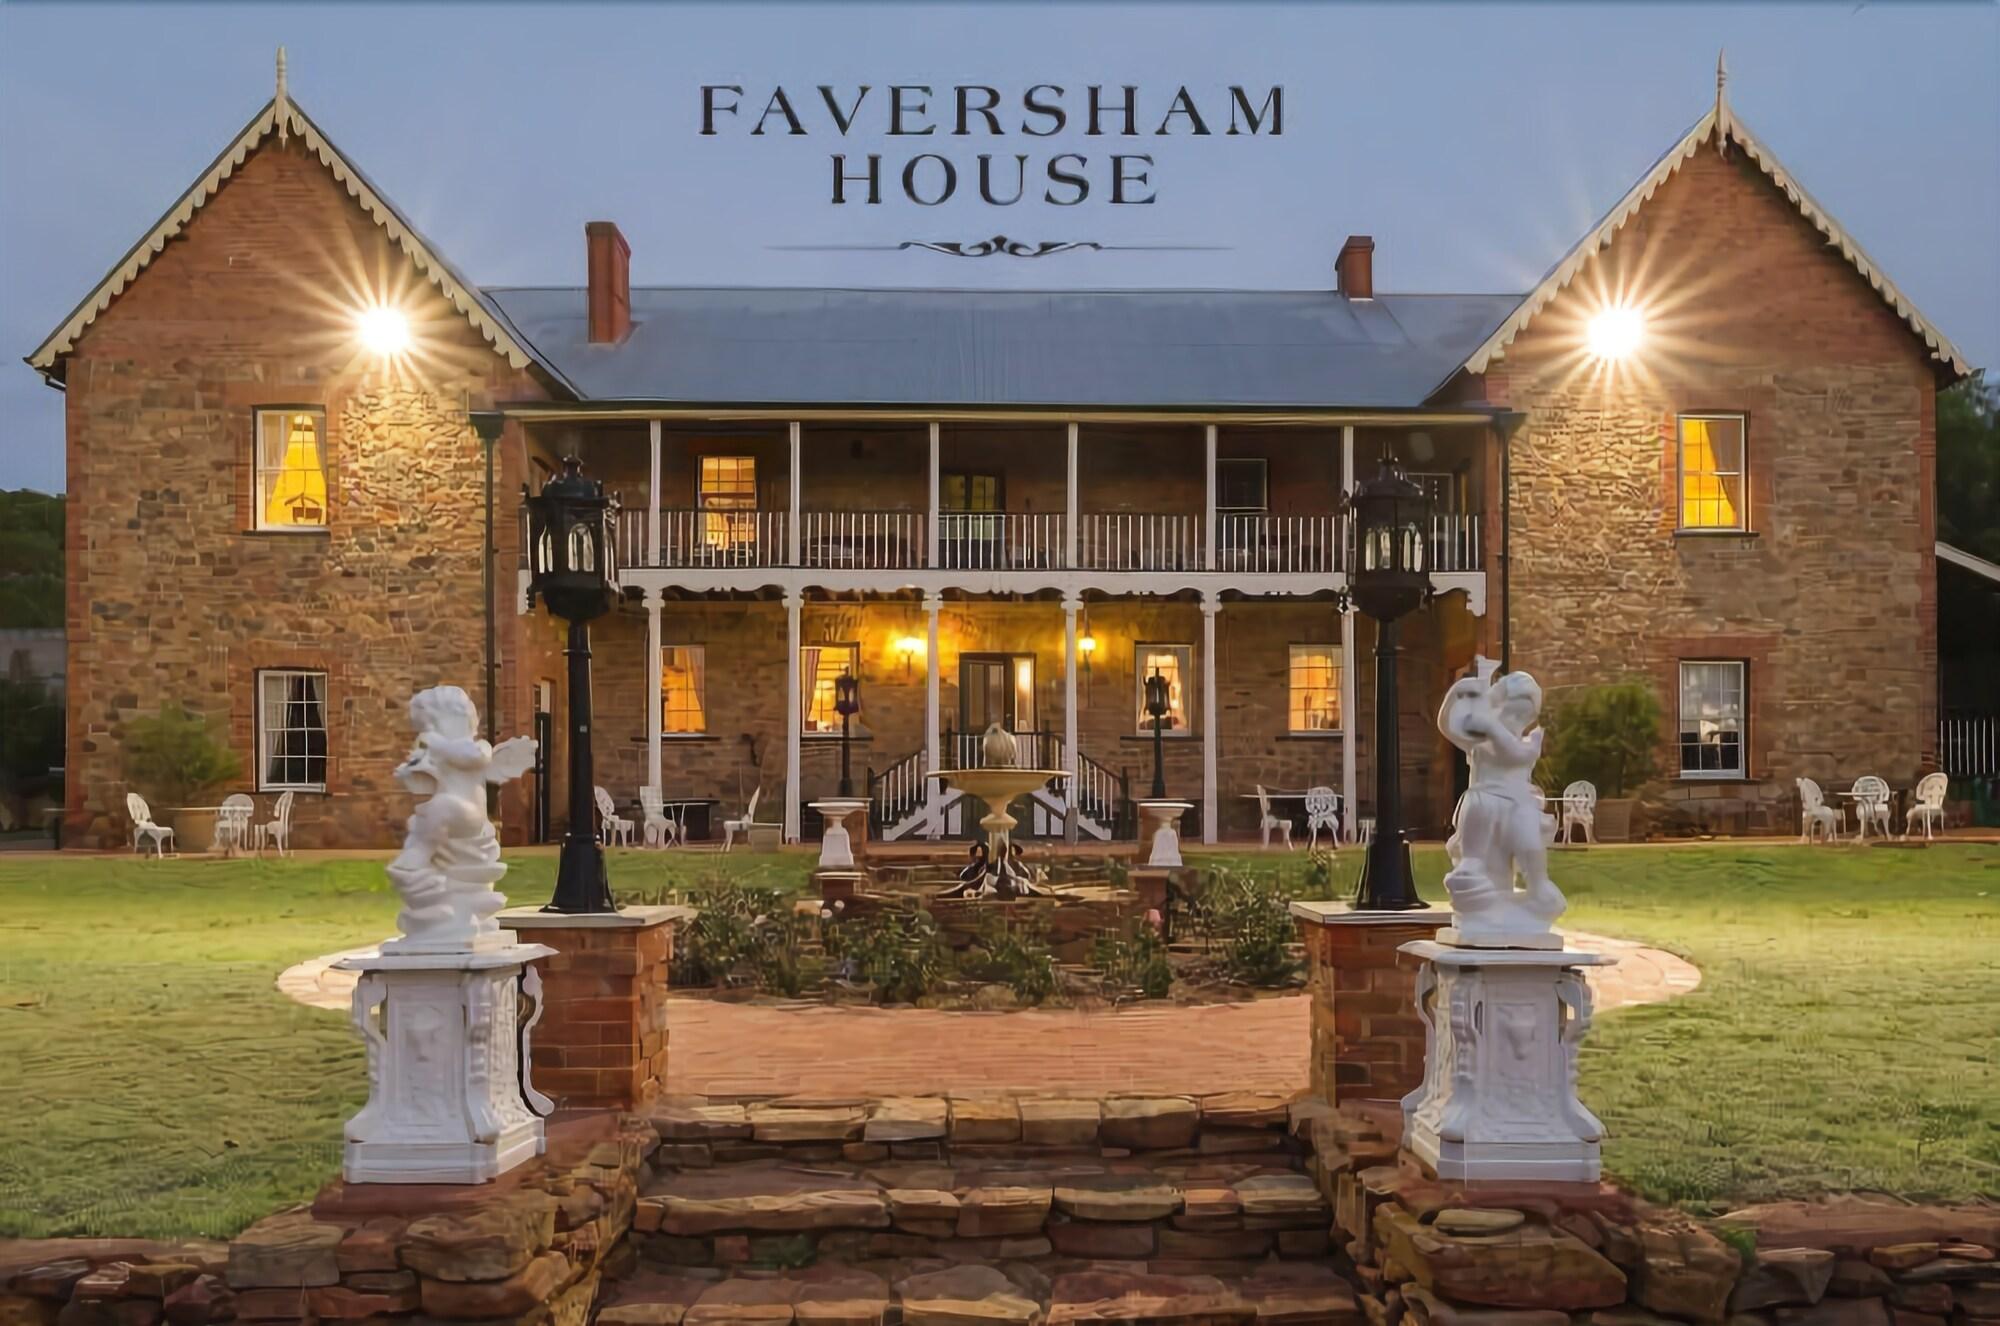 FAVERSHAM HOUSE